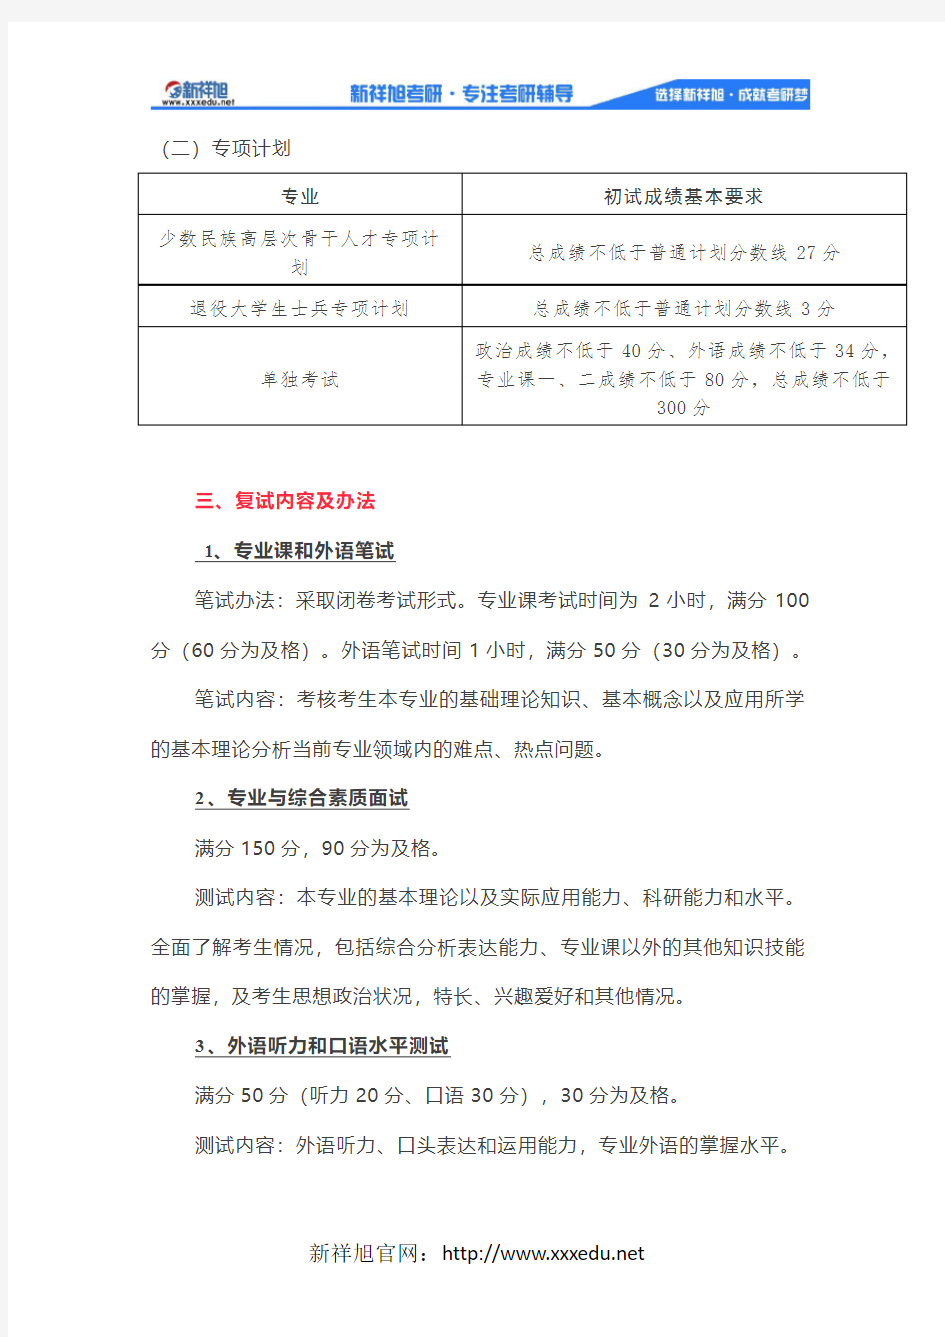 中国人民大学行政管理考研2019年复试基本分数线及复试名单!